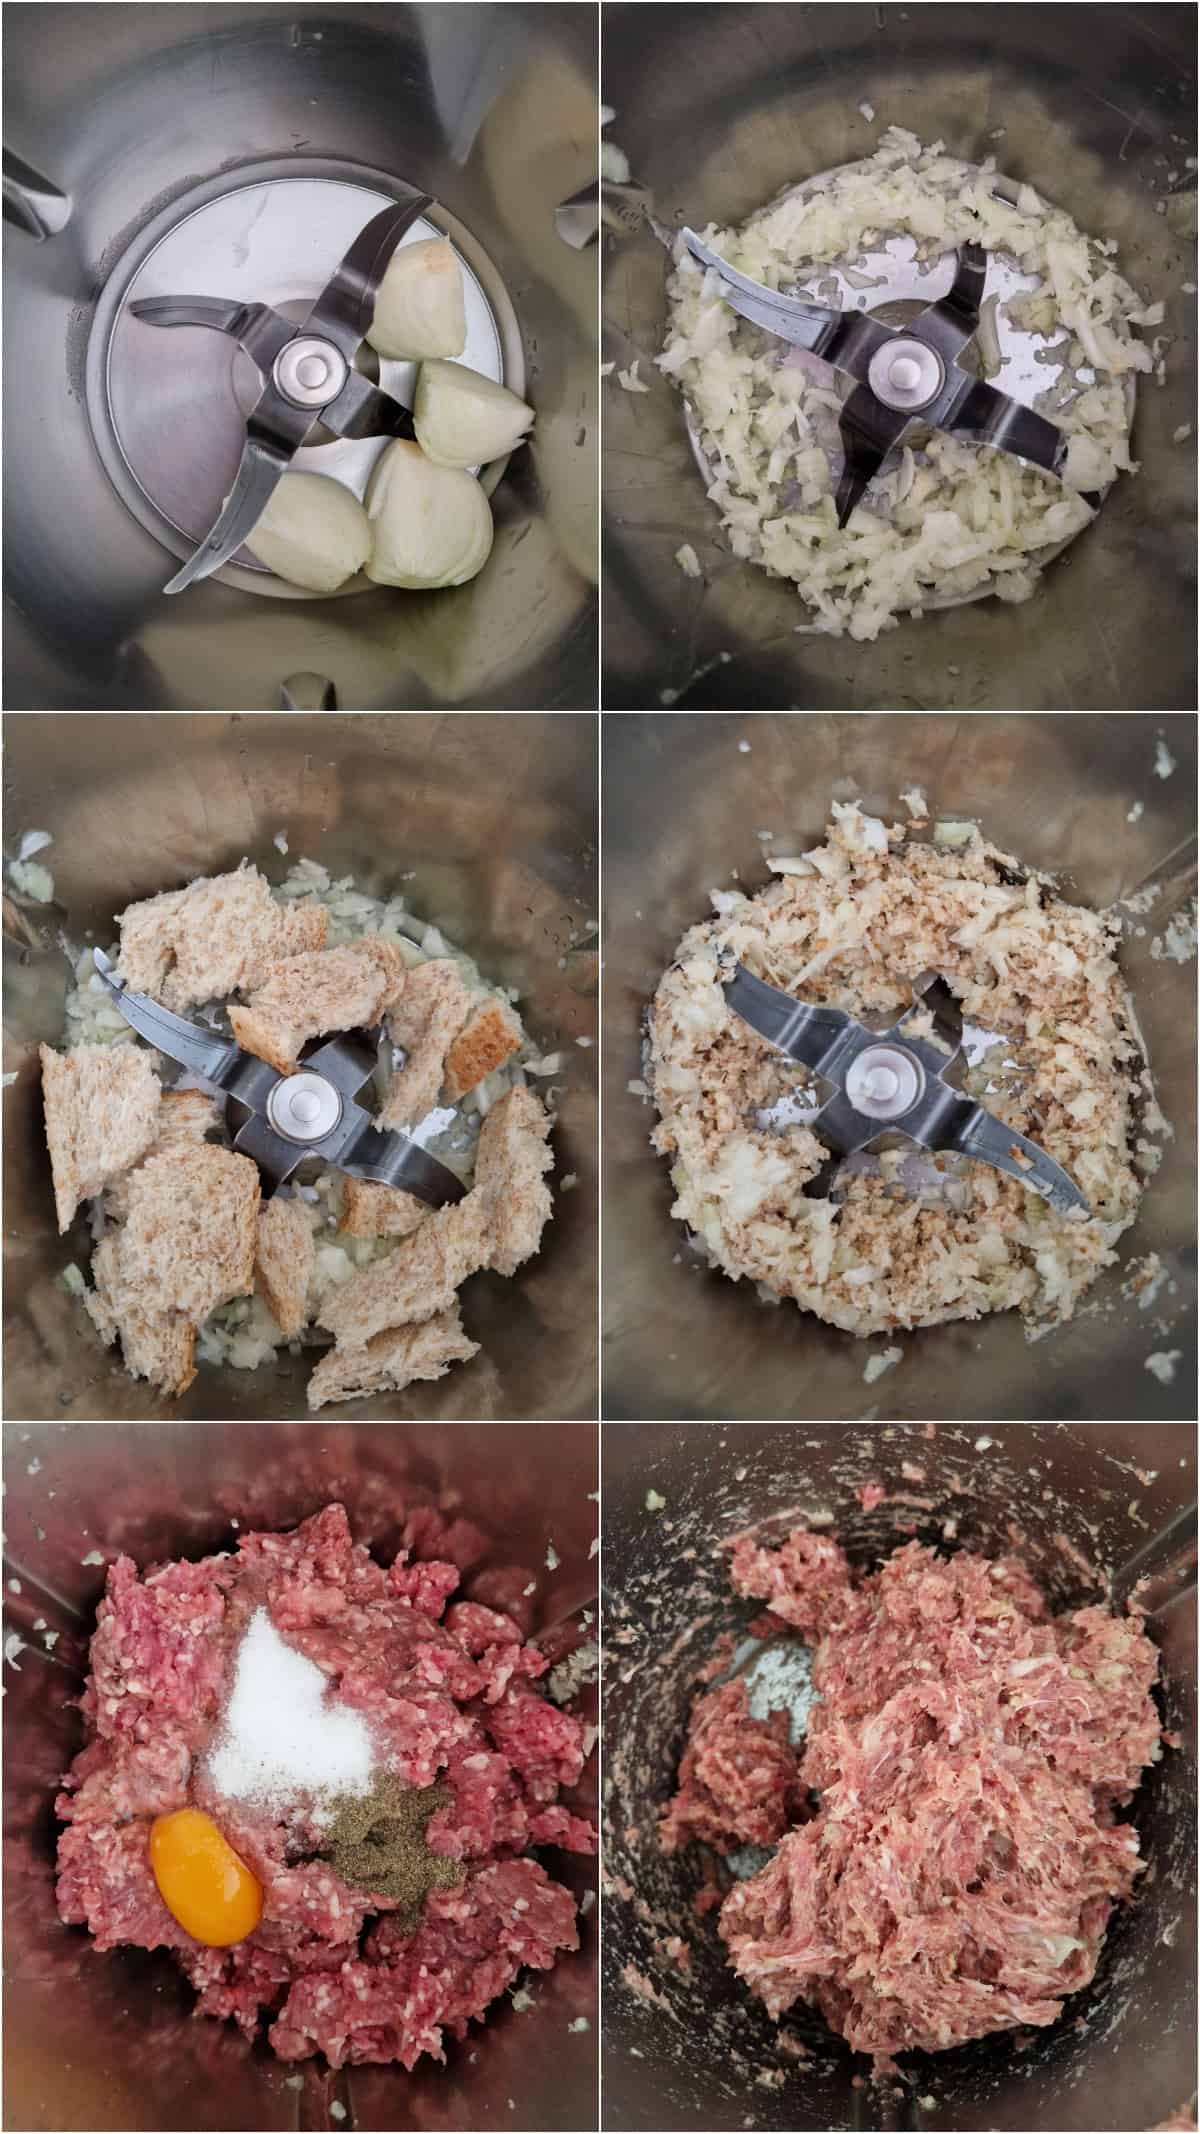 Eine Collage der Zubereitungsschritte für Cannelloni mit Hackfleischfüllung.